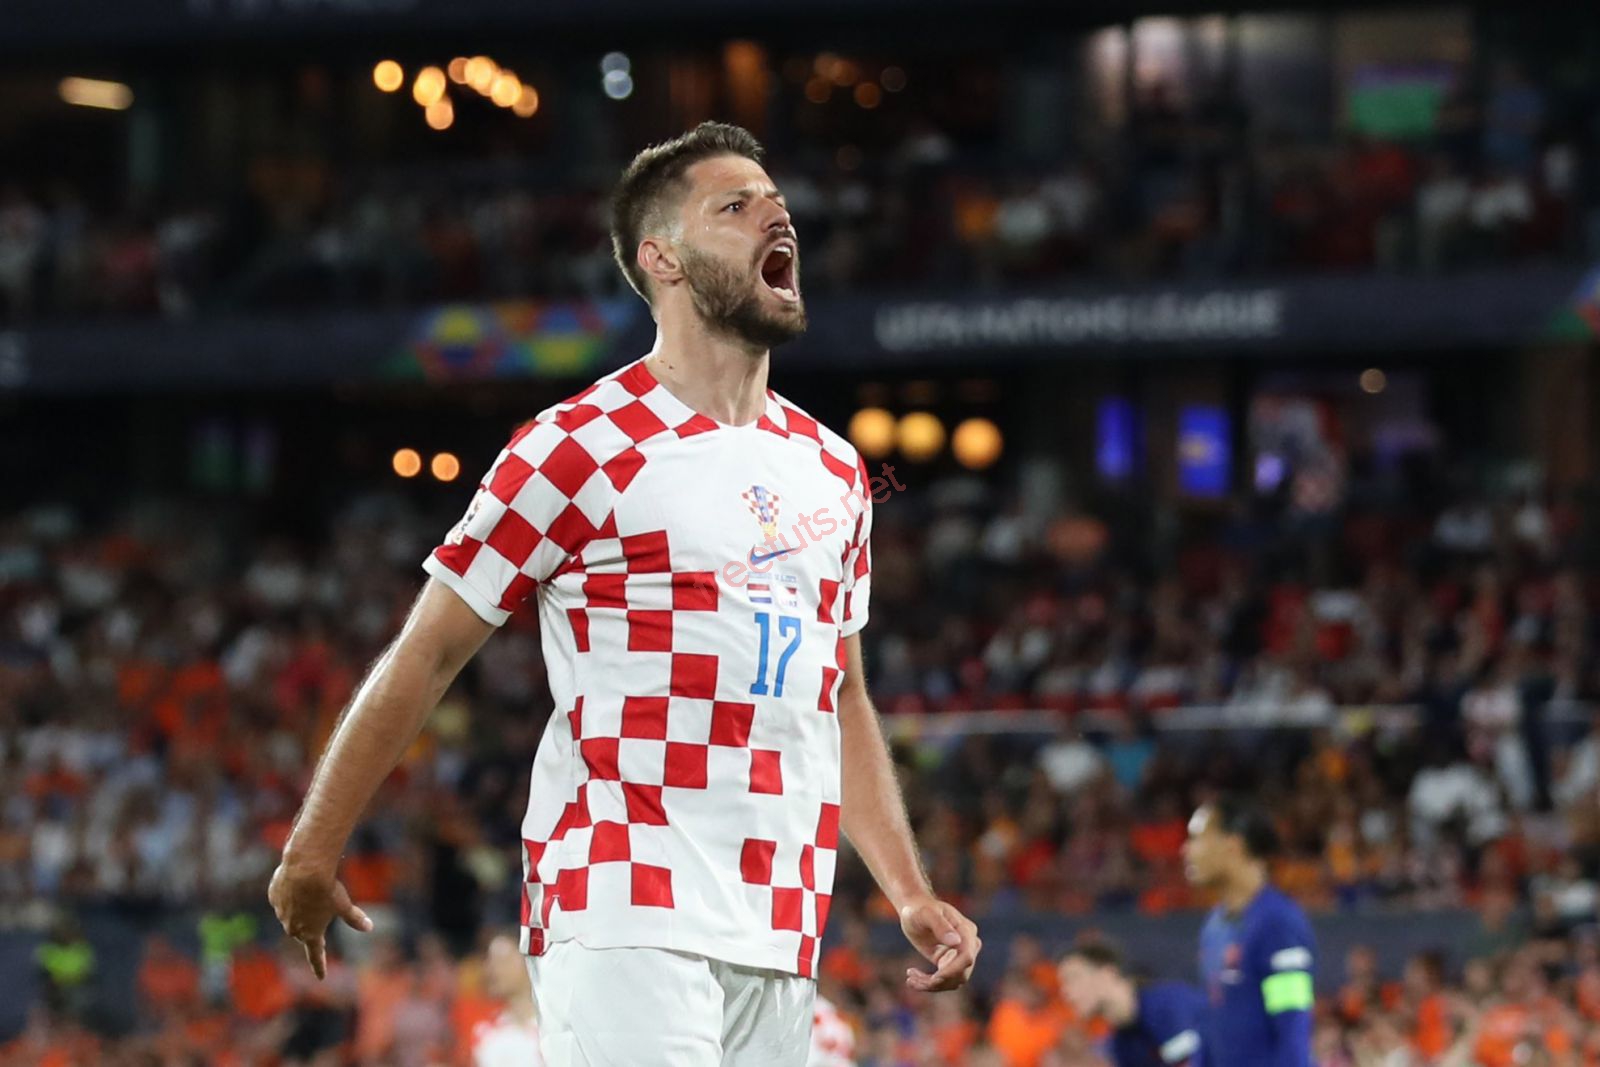 Đội hình Croatia tham dự Euro 2024 - Luka Modric góp mặt.